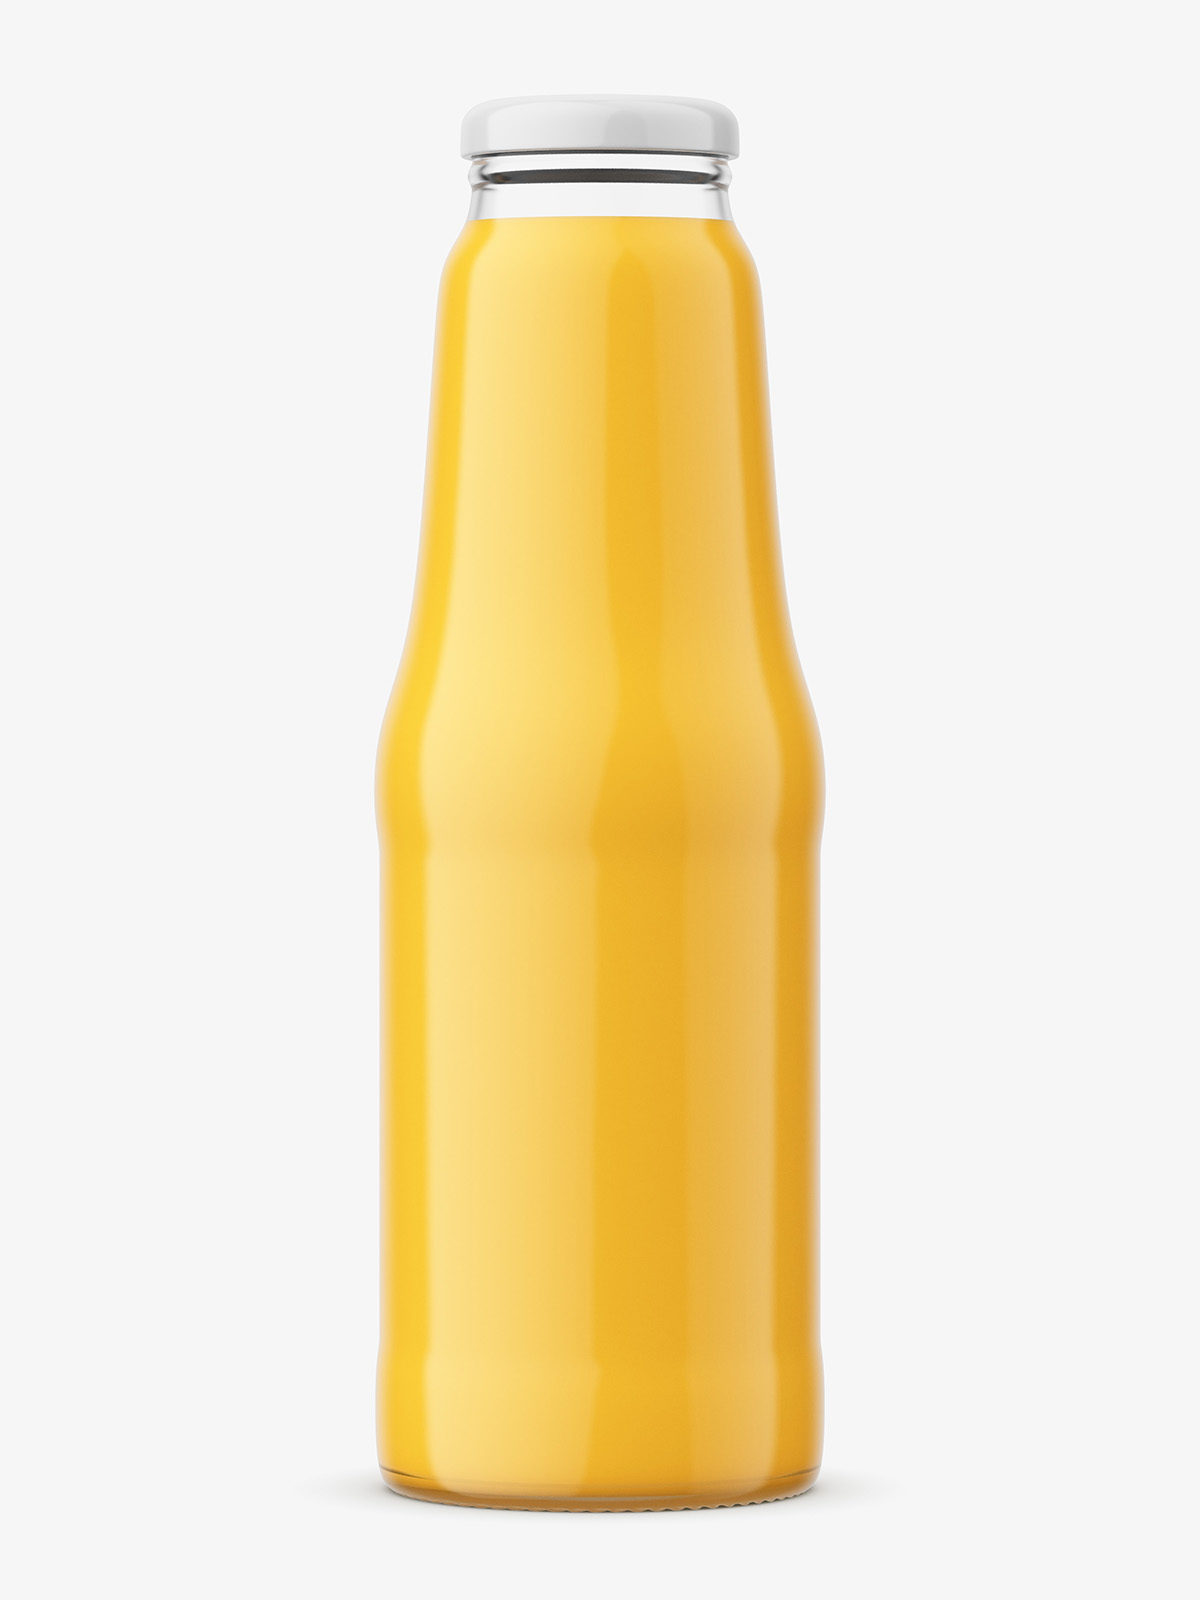 Download Glass juice bottle mockup - Smarty Mockups